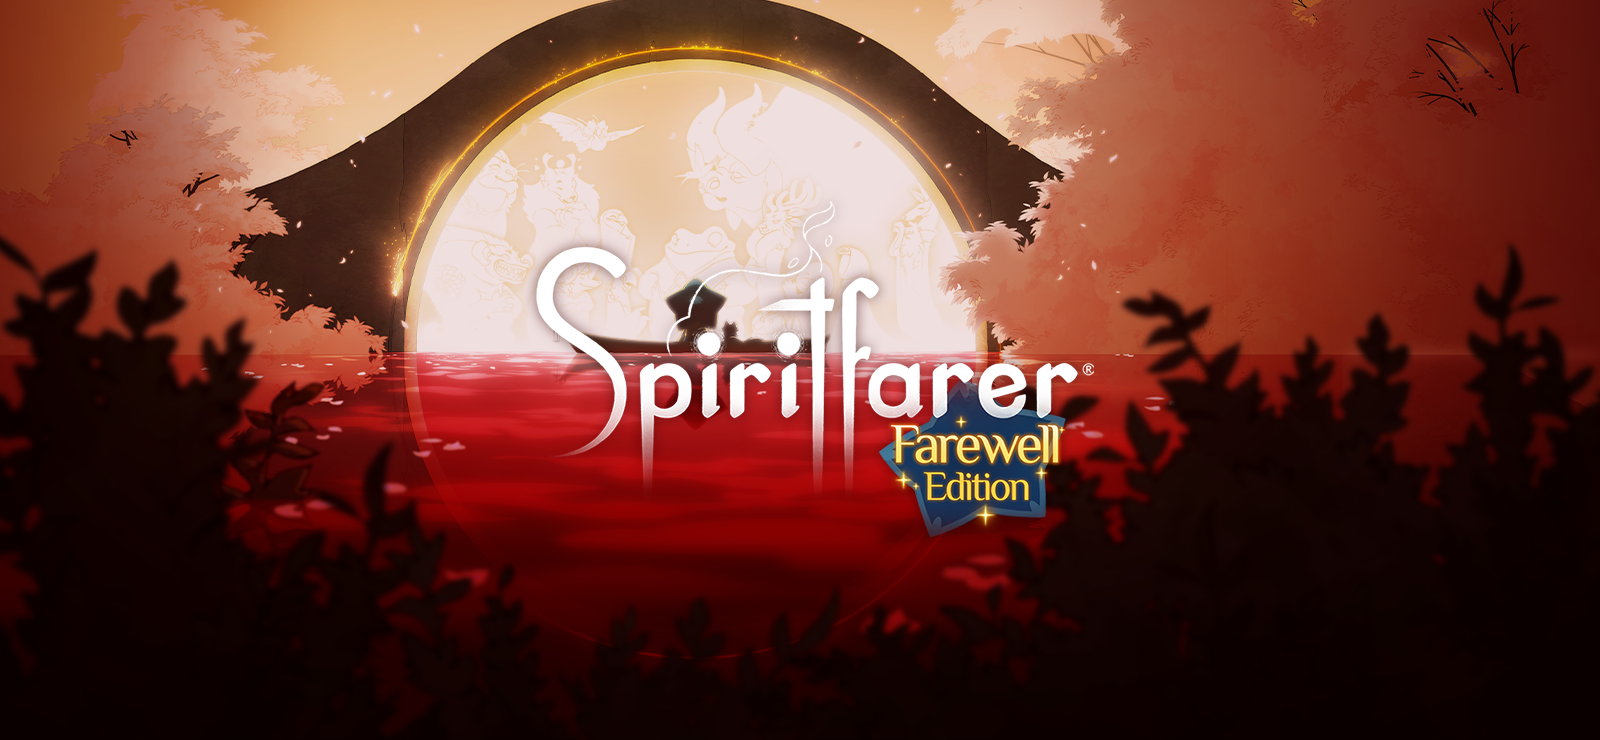 Spiritfarer®: Farewell Edition - Digital Artbook